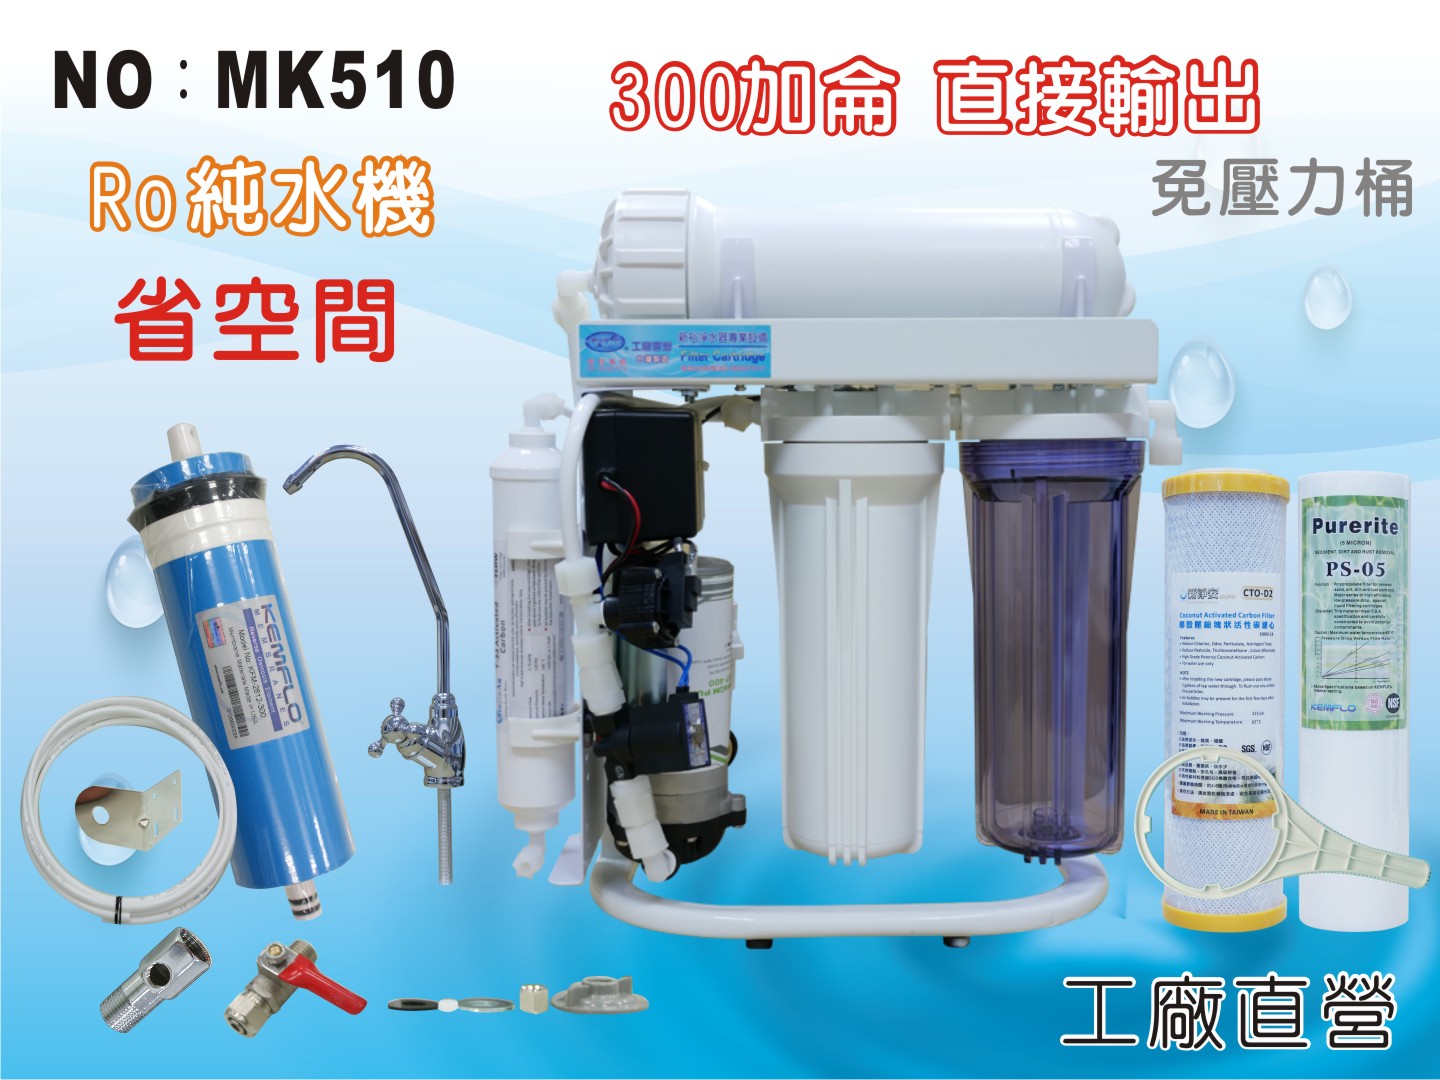 ✦本月特惠✦龍門淨水 S300G直接輸出 RO純水機 腳架 一般濾殼式 省空間 家用 商用(MK510)